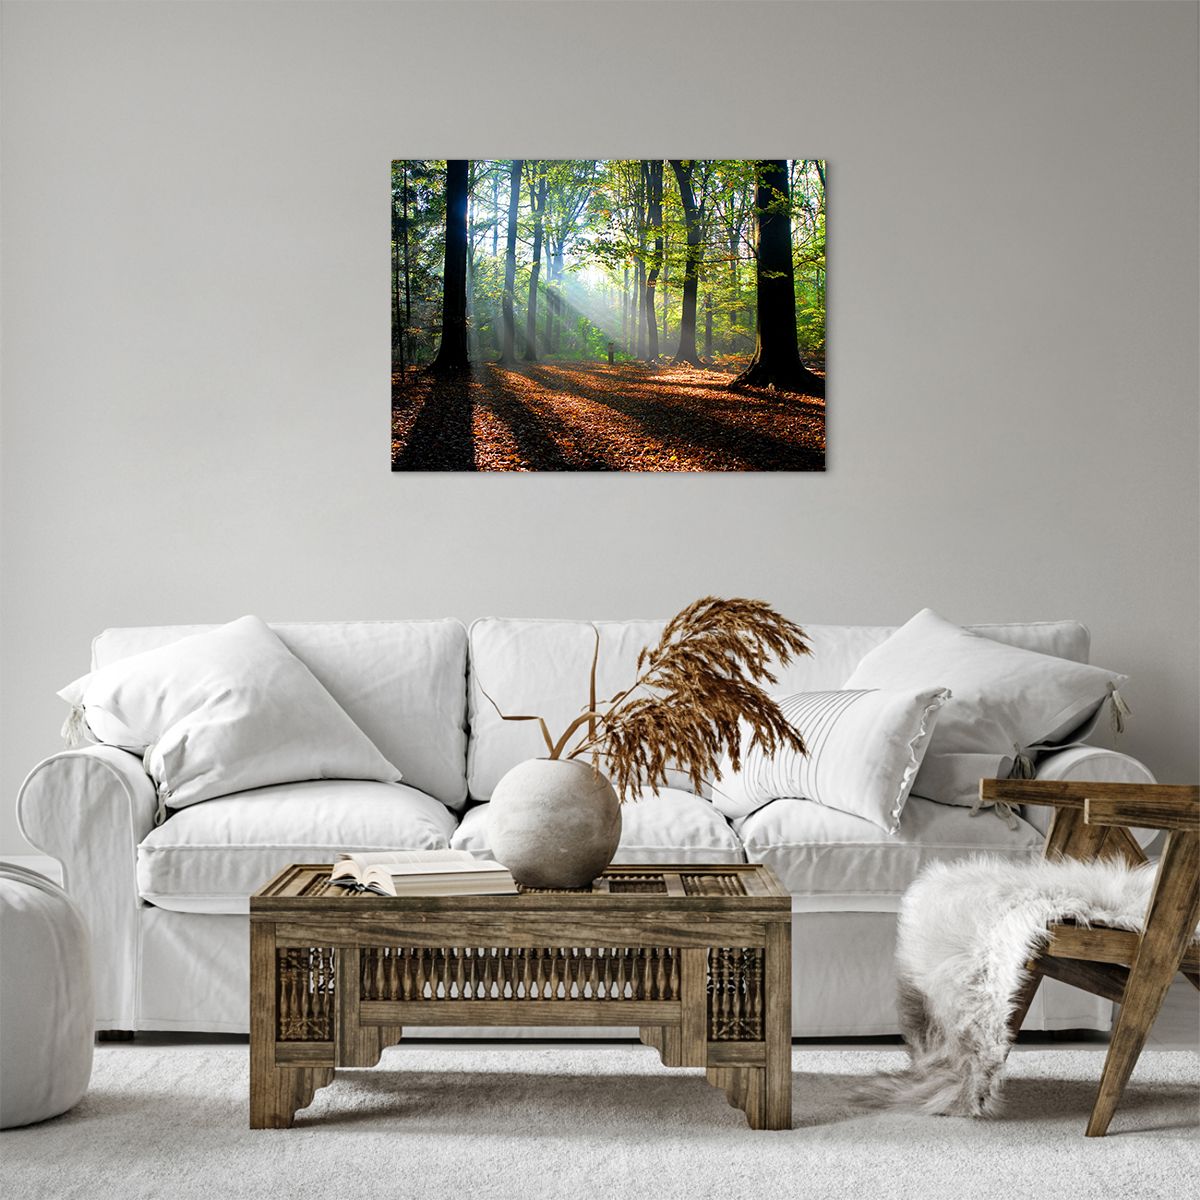 Bild auf Leinwand Wald, Bild auf Leinwand Bäume, Bild auf Leinwand Natur, Bild auf Leinwand Sonnenstrahlen, Bild auf Leinwand Landschaft